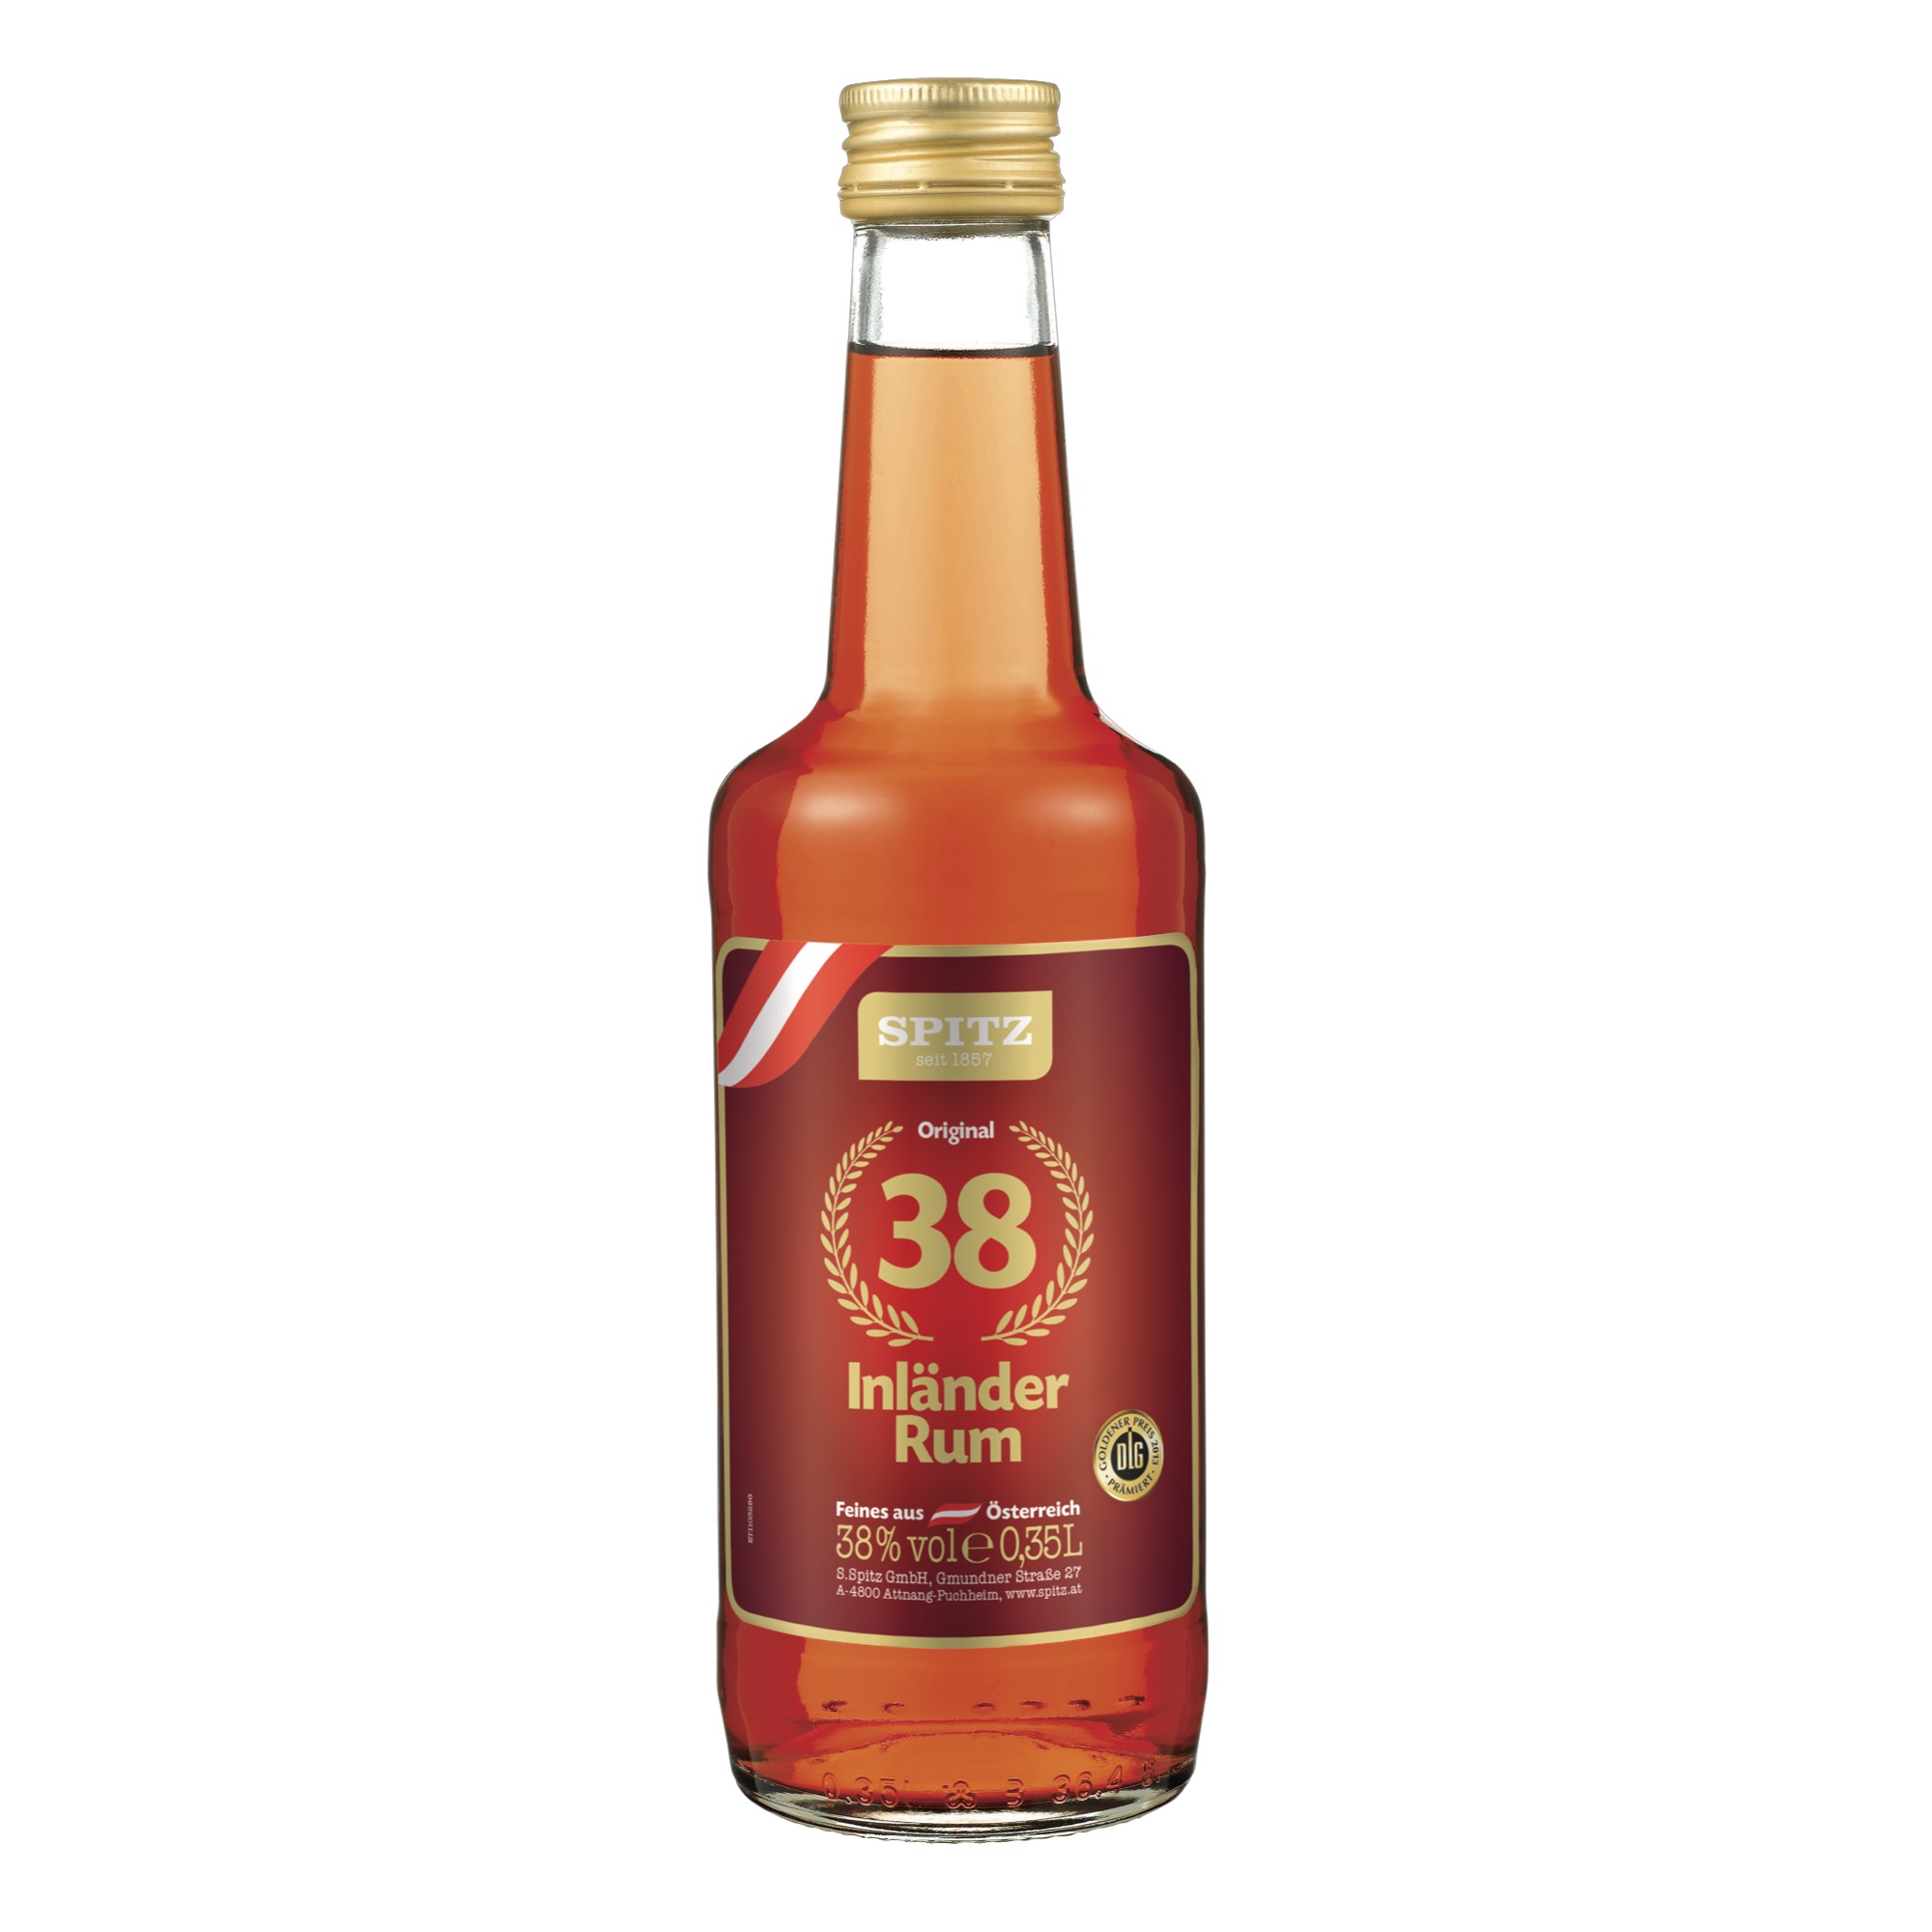 Spitz Inländer Rum 38% 0,35l